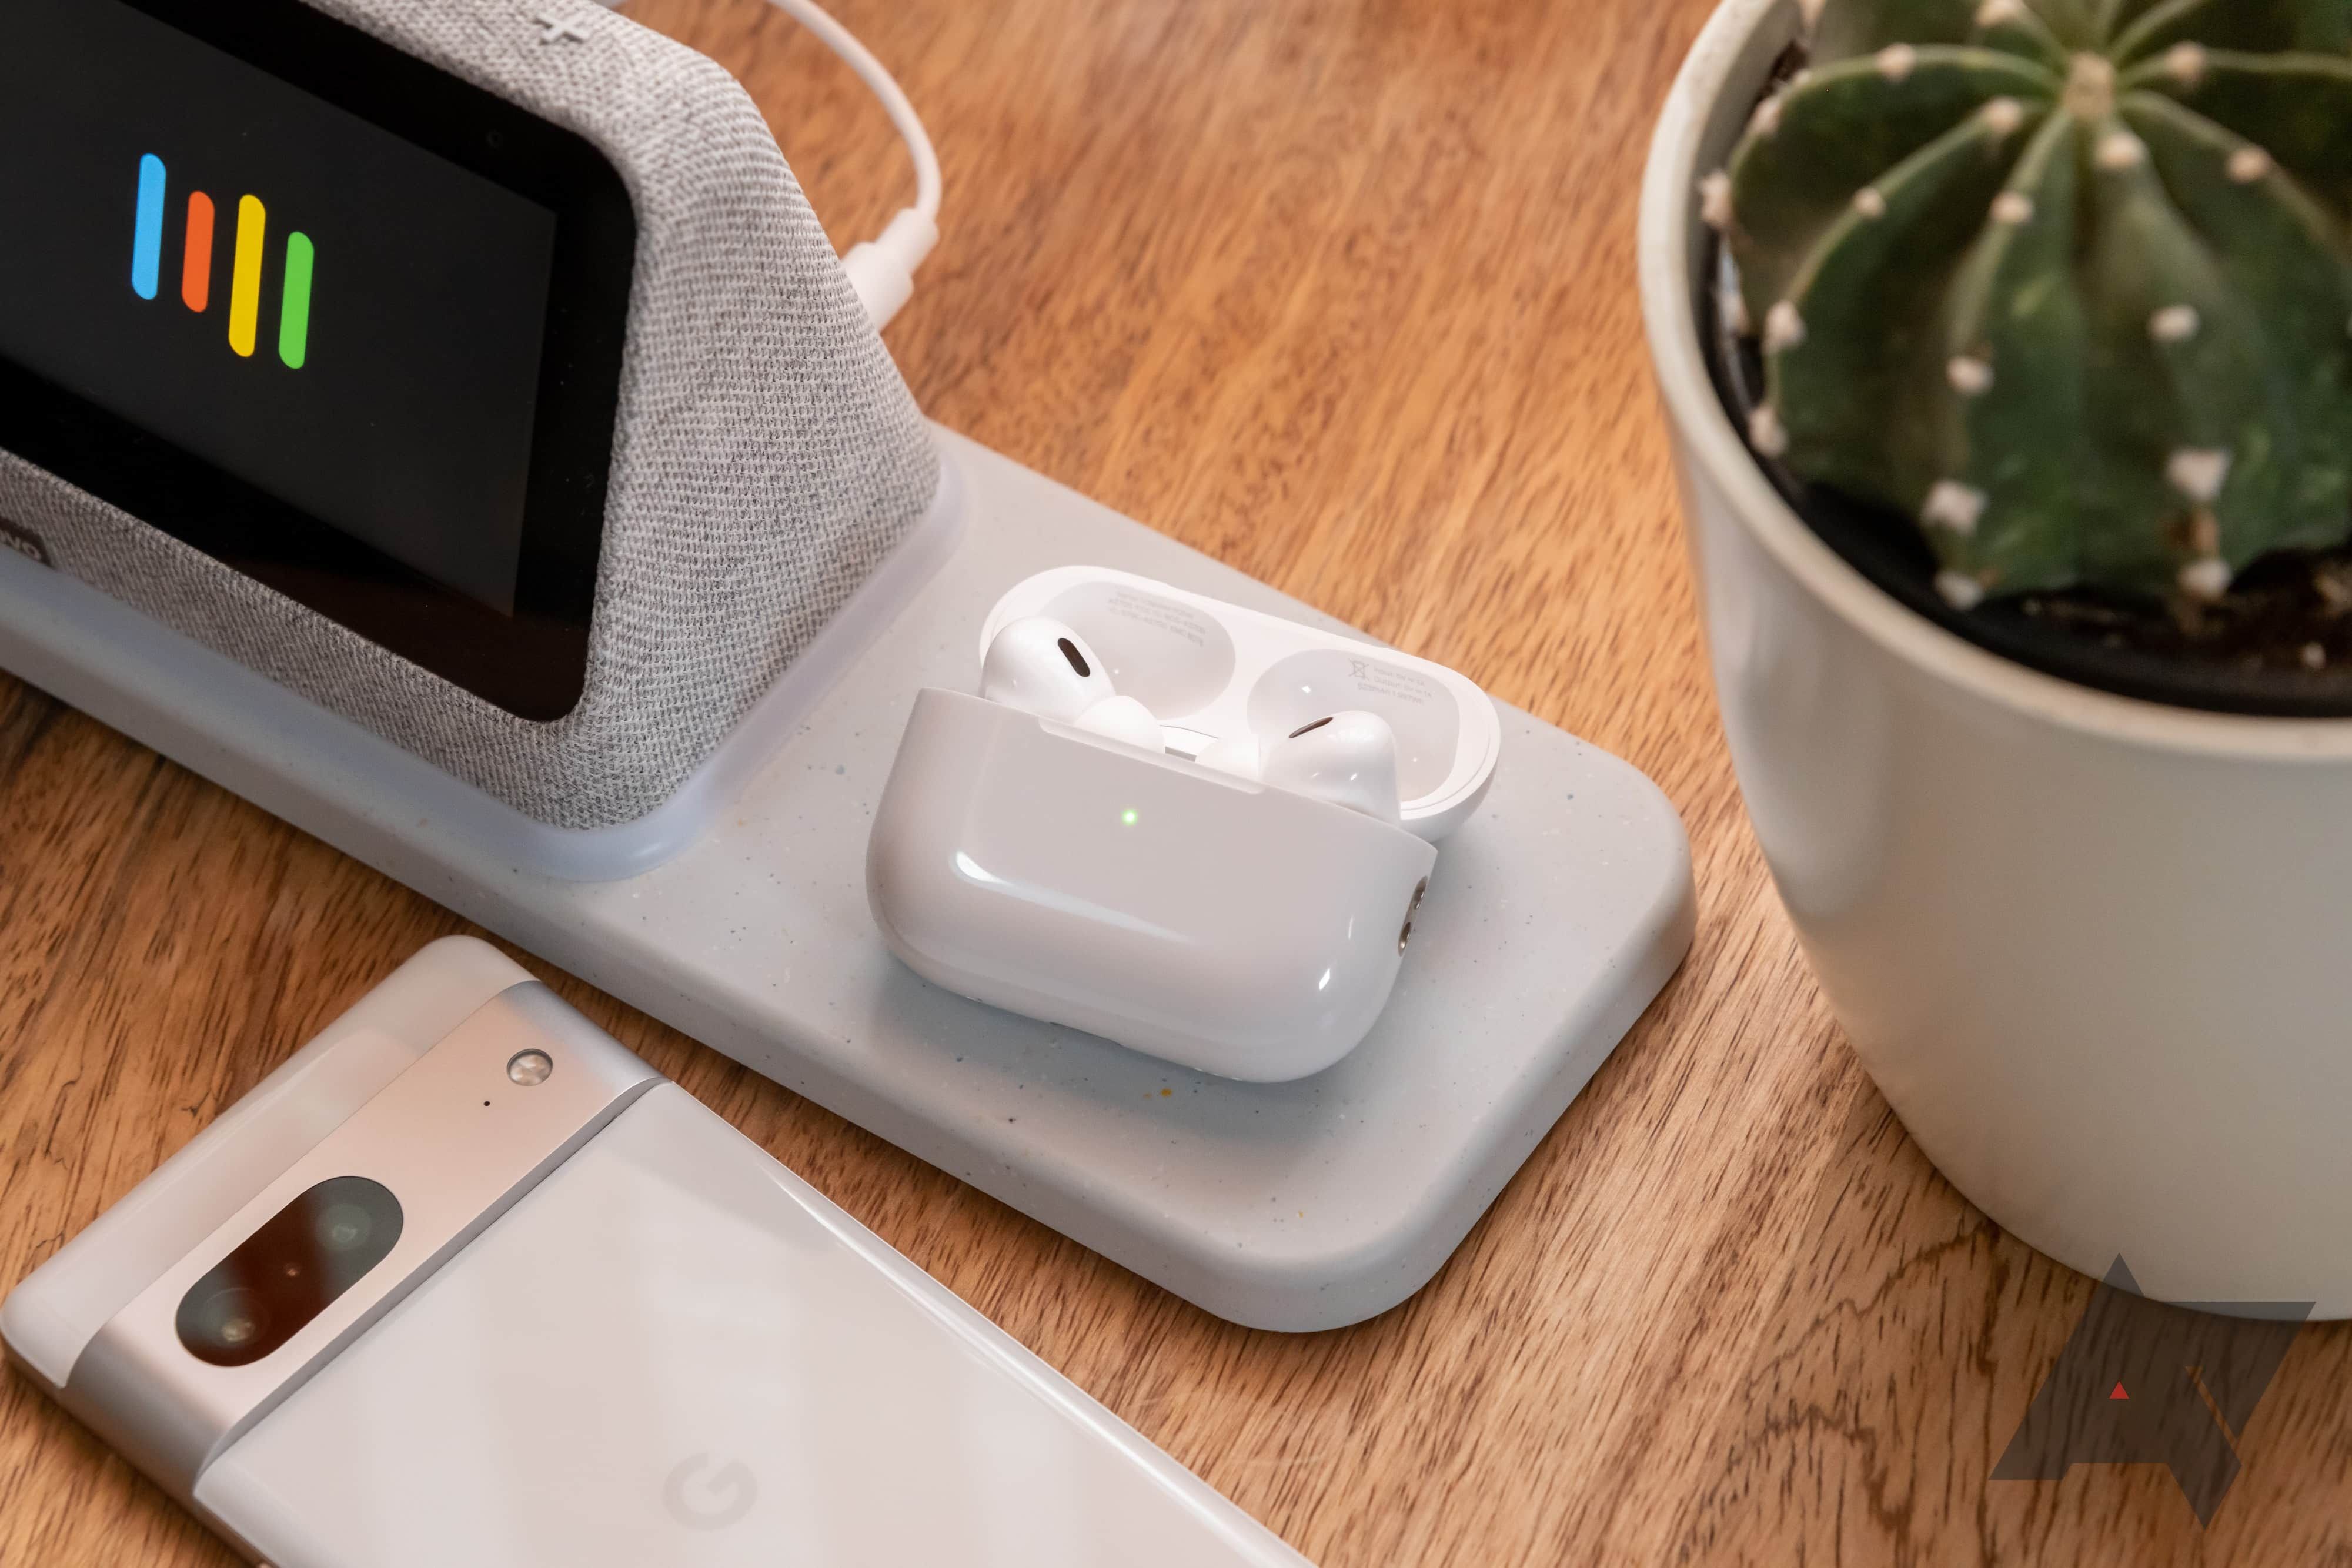 Fones de ouvido sem fio no estojo de carregamento sobre uma mesa com um smartphone, um display inteligente e um pequeno cacto.